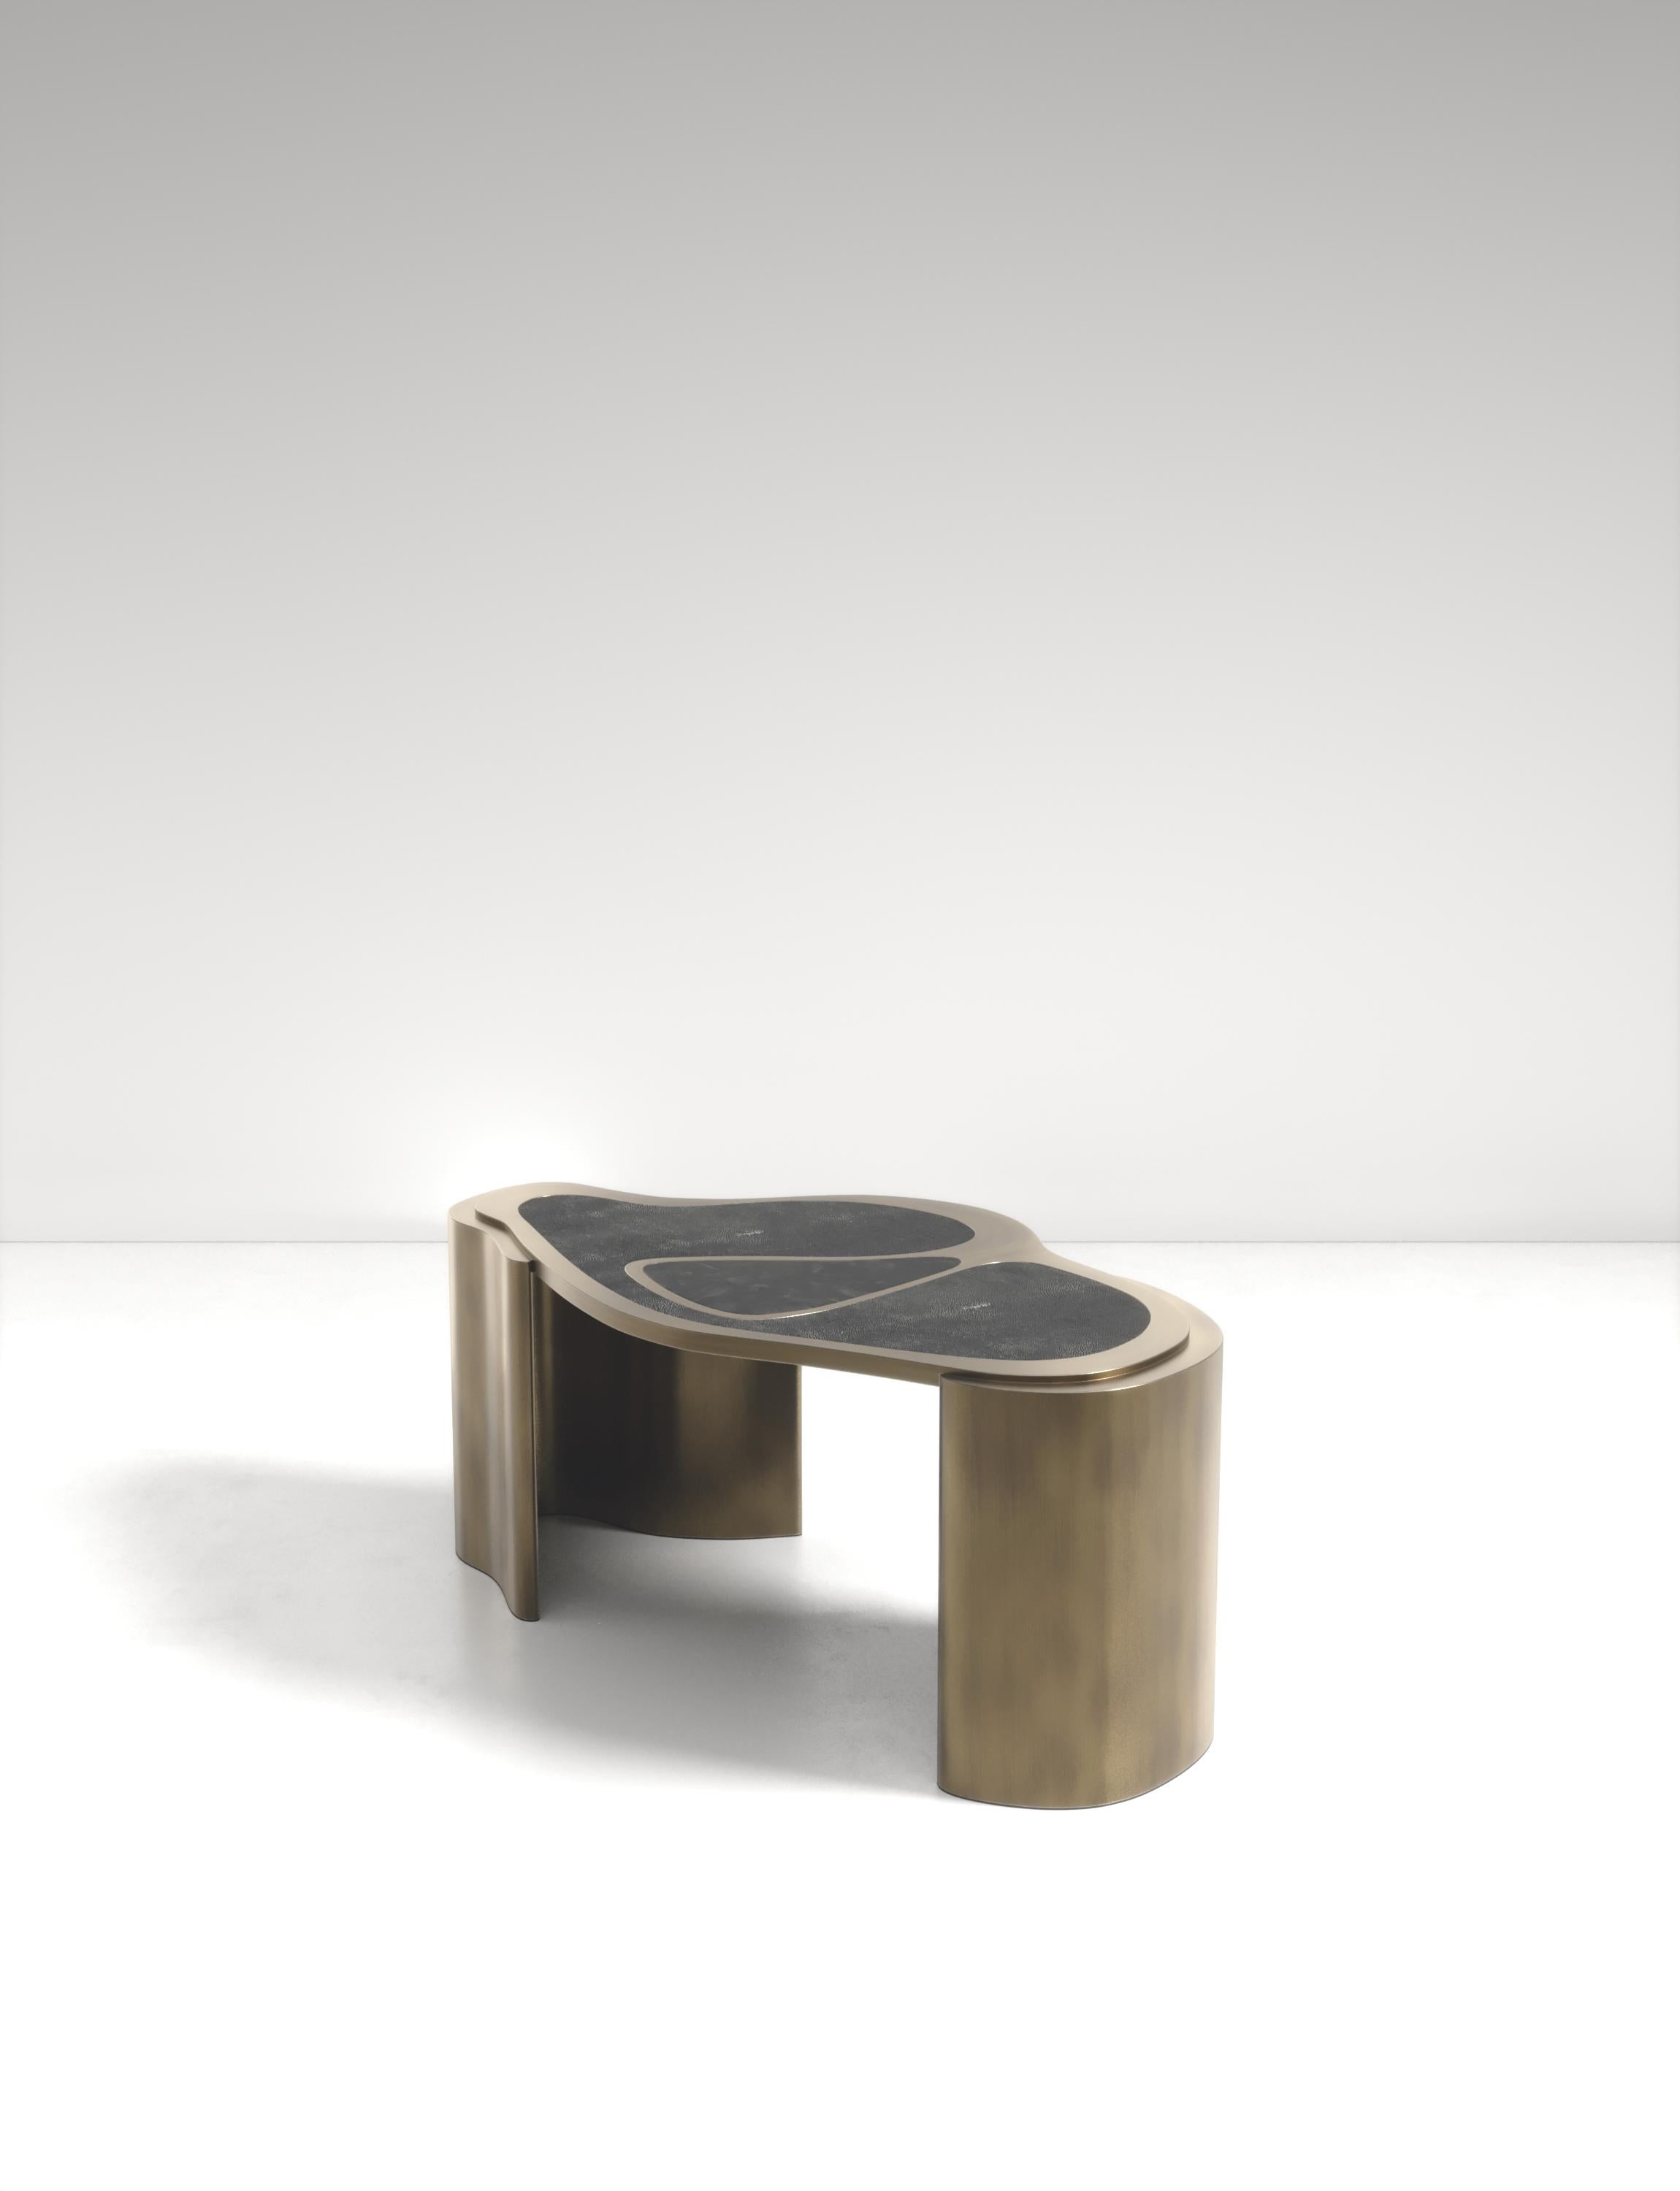 La table basse Mask de Kifu Paris est une pièce polyvalente et organique. Le plateau et la base amorphes sont incrustés d'un mélange de galuchat noir de charbon, de coquille de stylo noire et de laiton bronze-patine. Cette pièce a été conçue par